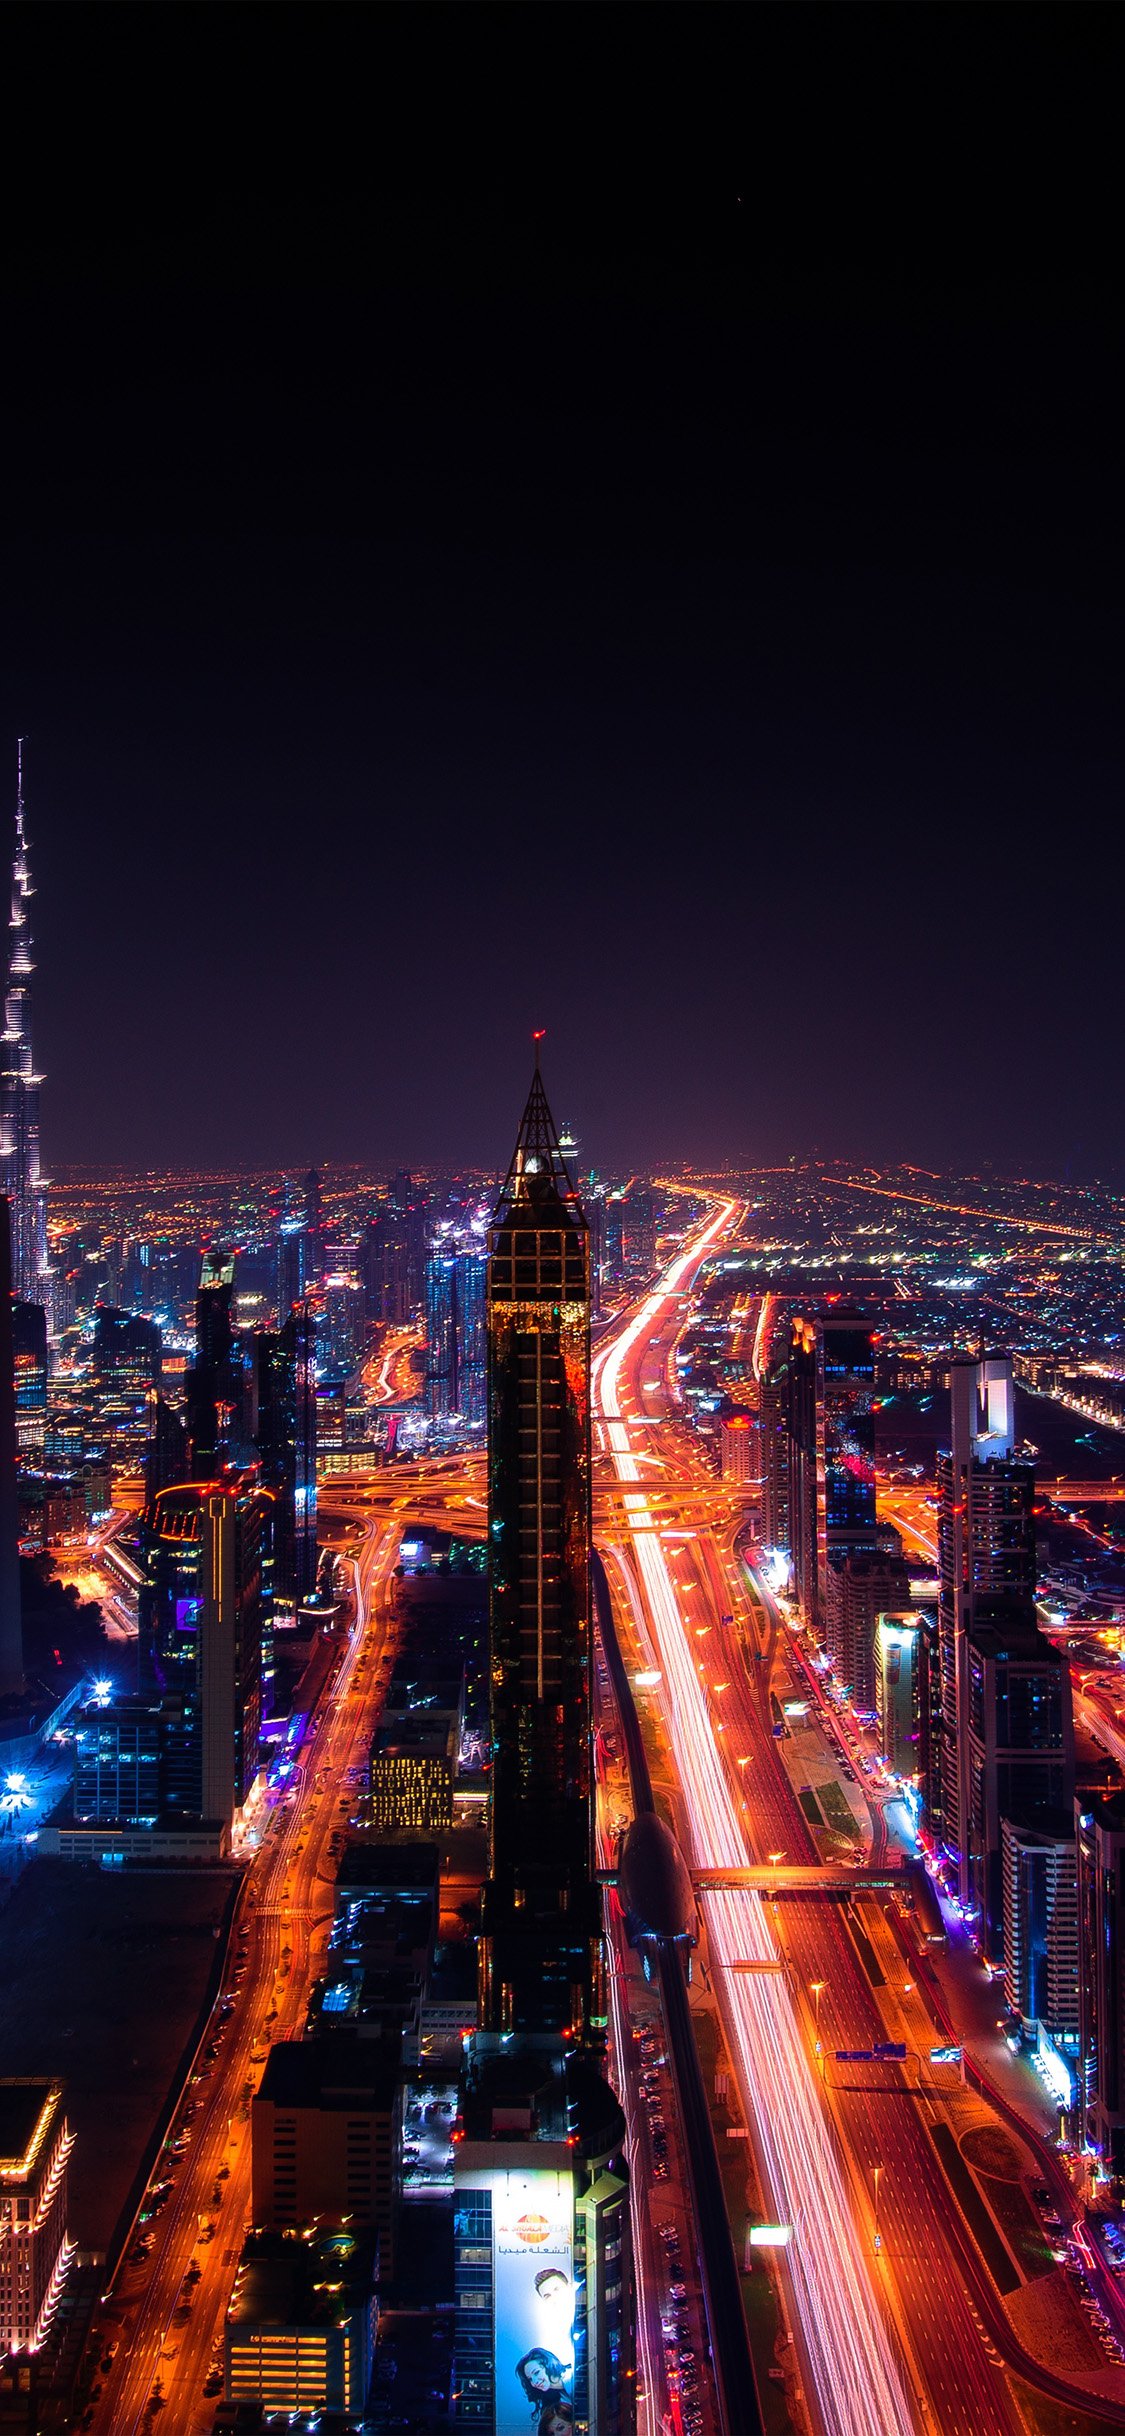 Dubai Night view